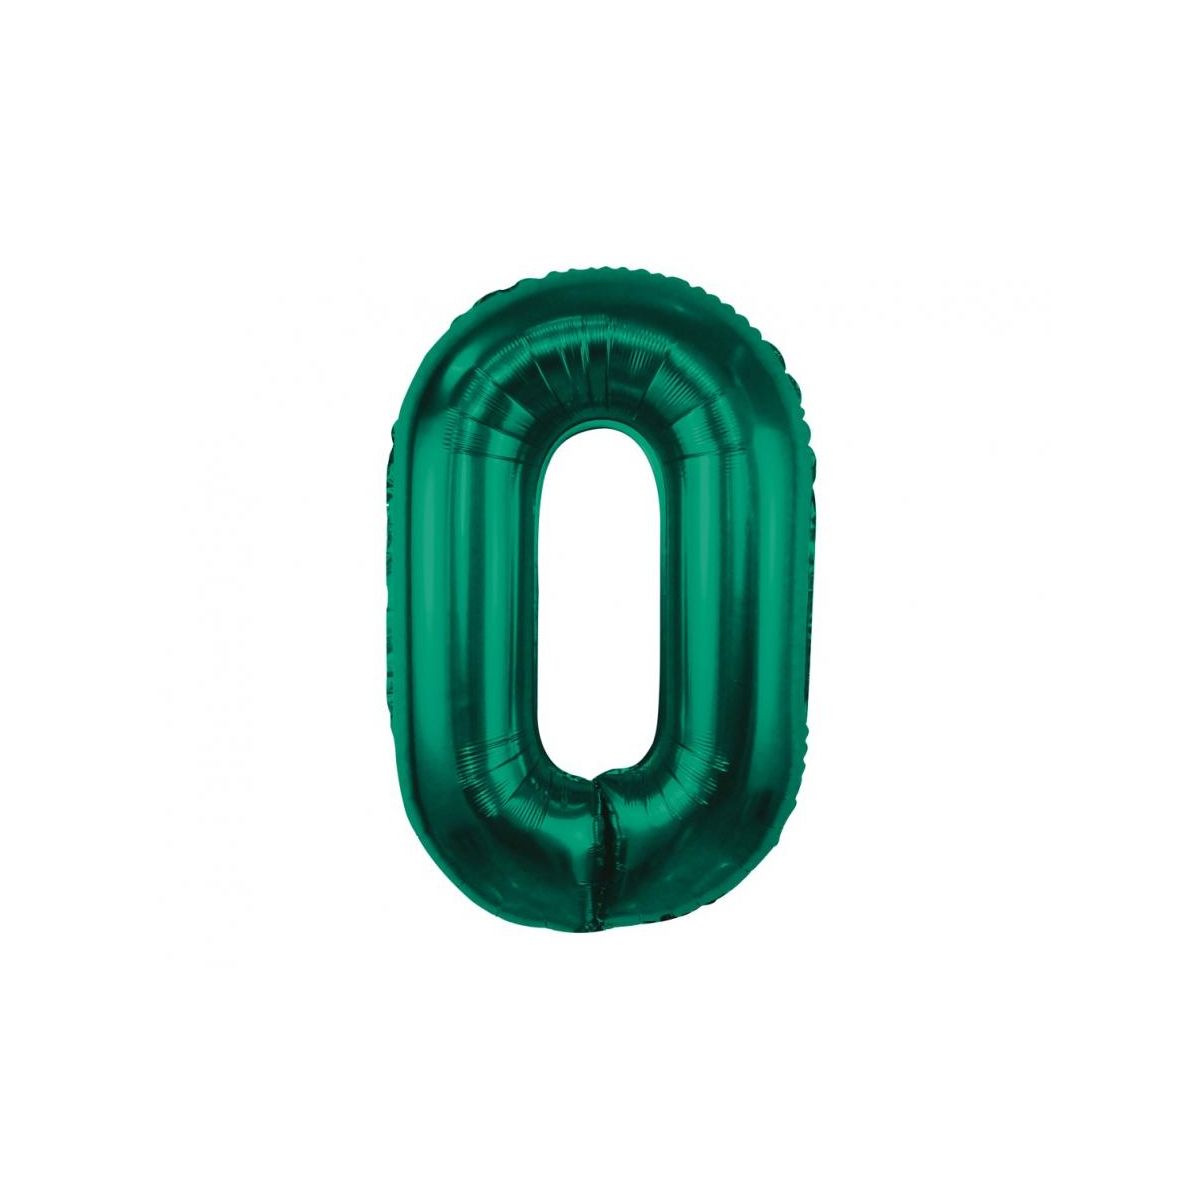 Balon foliowy Godan cyfra 0, zieleń butelkowa, 85 cm (CH-B8B0)